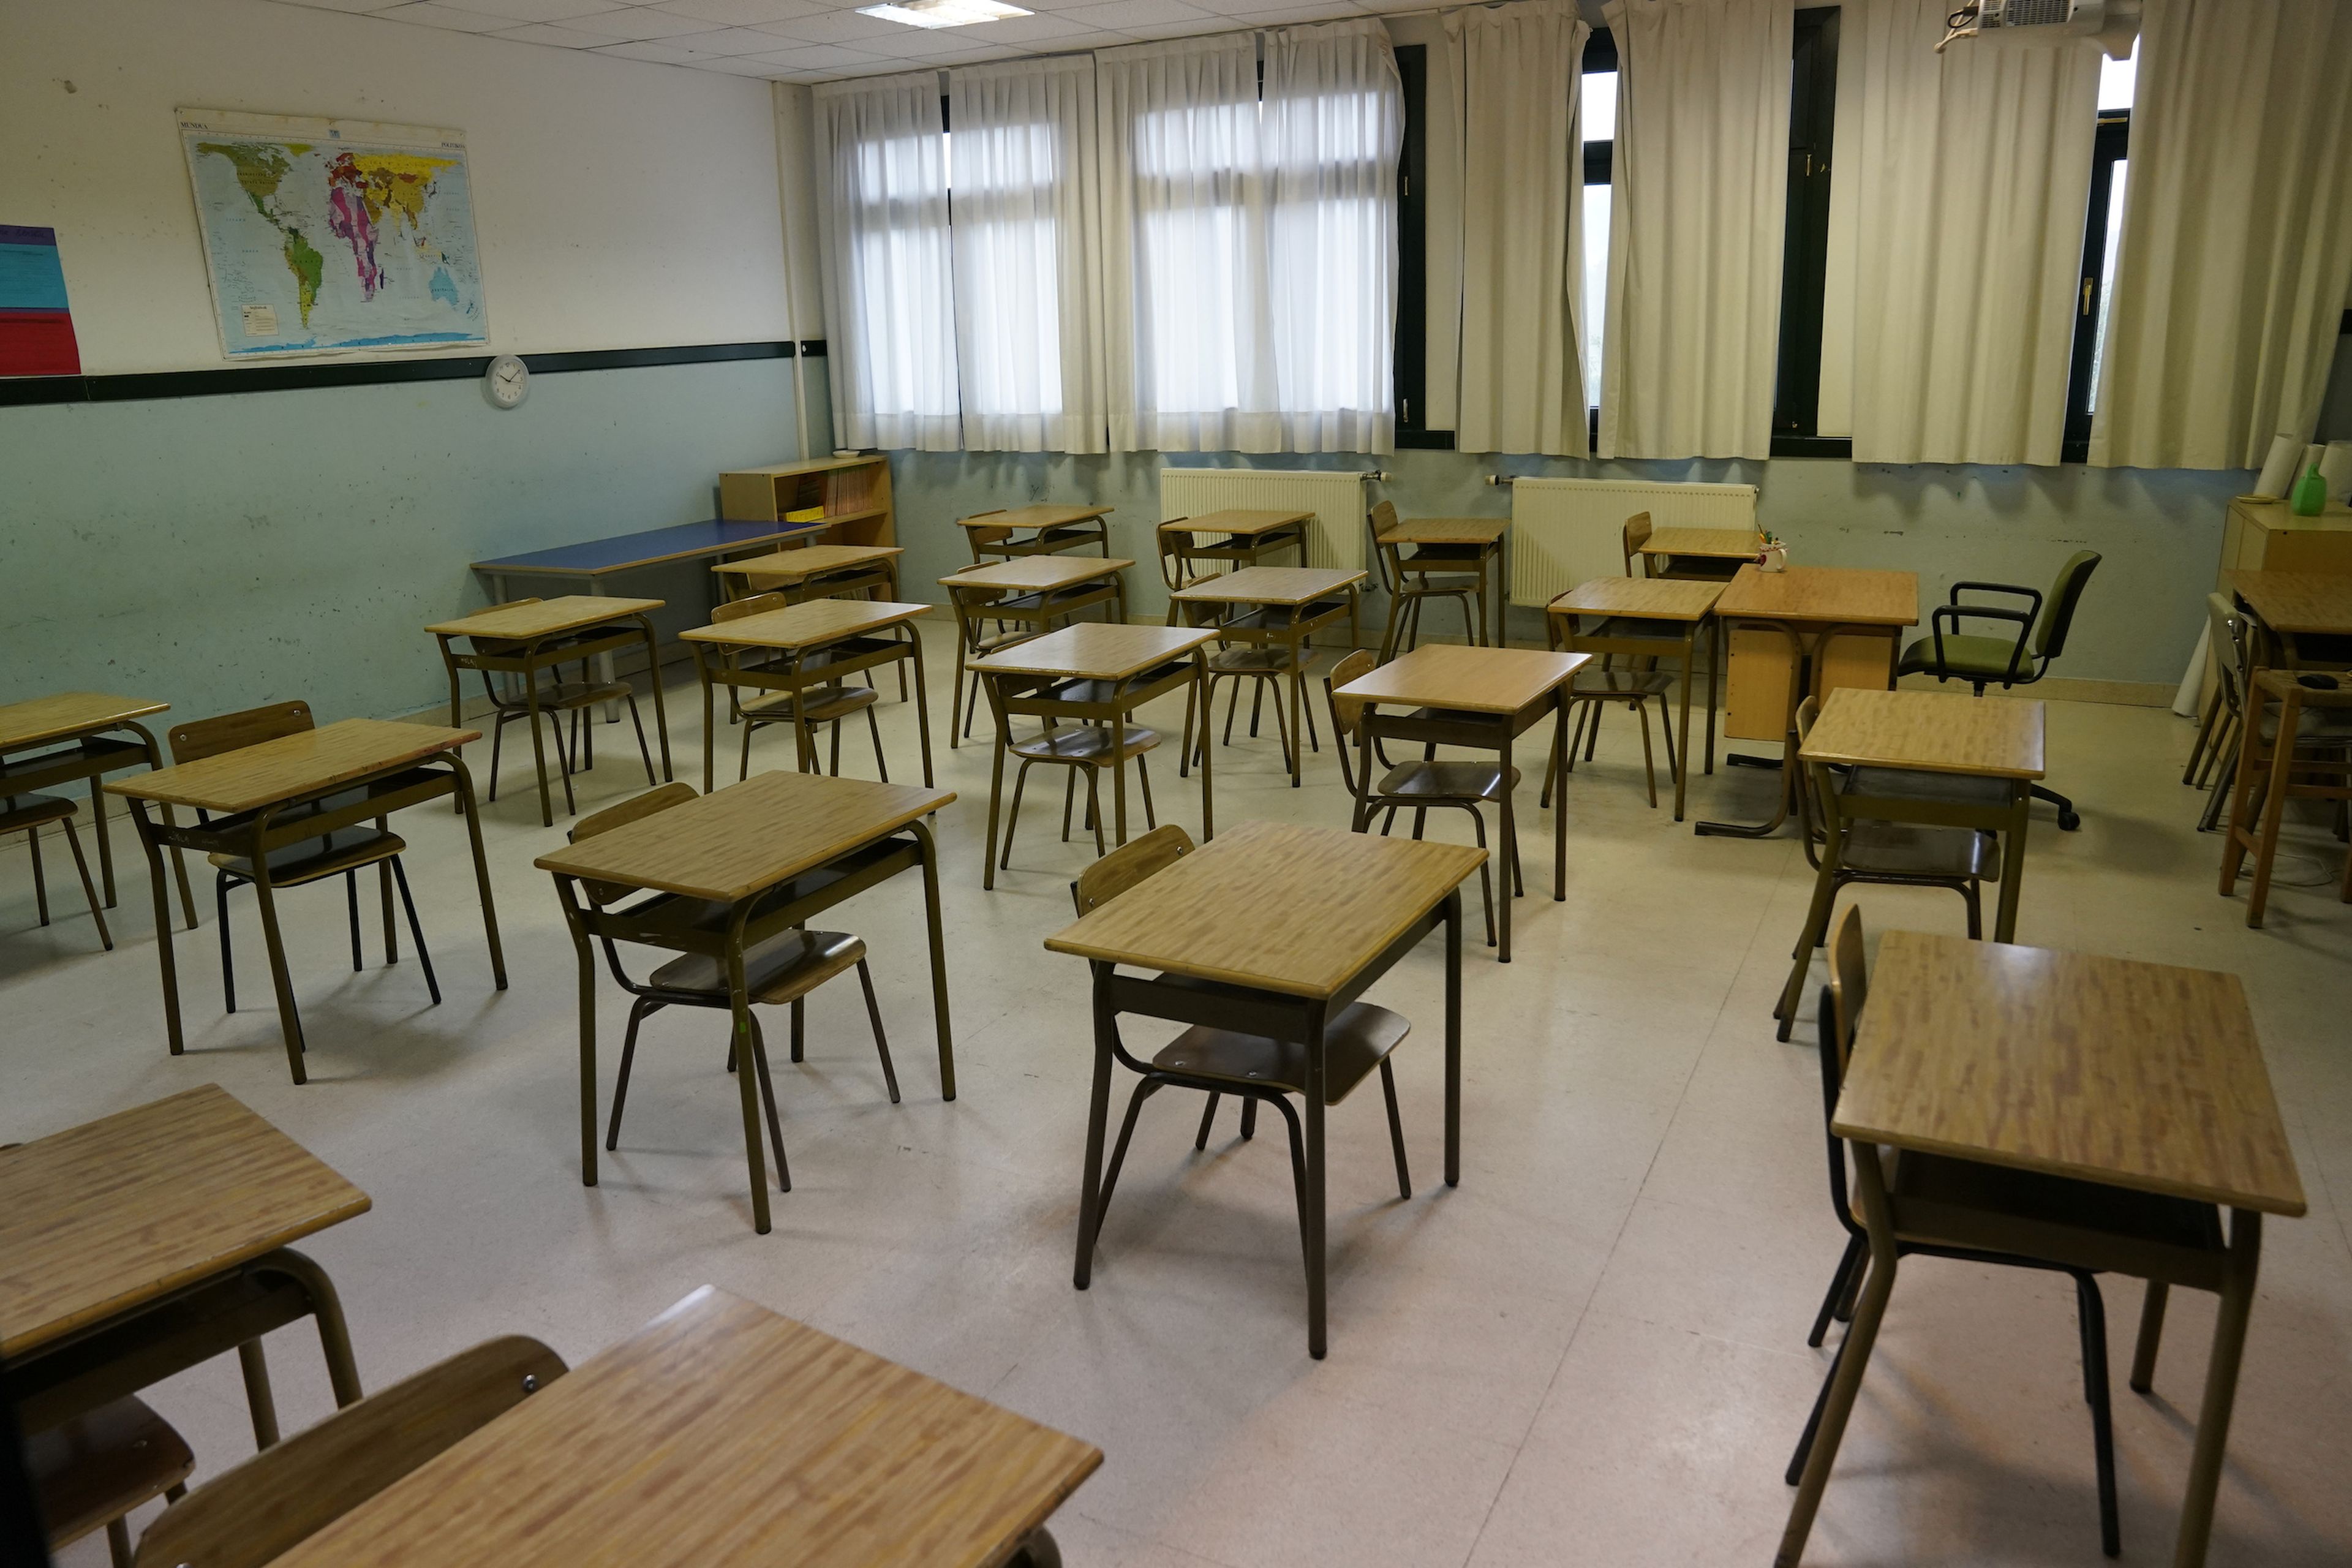 Un aula vacía con las mesas separadas para cumplir con la distancia de seguridad por el coronavirus